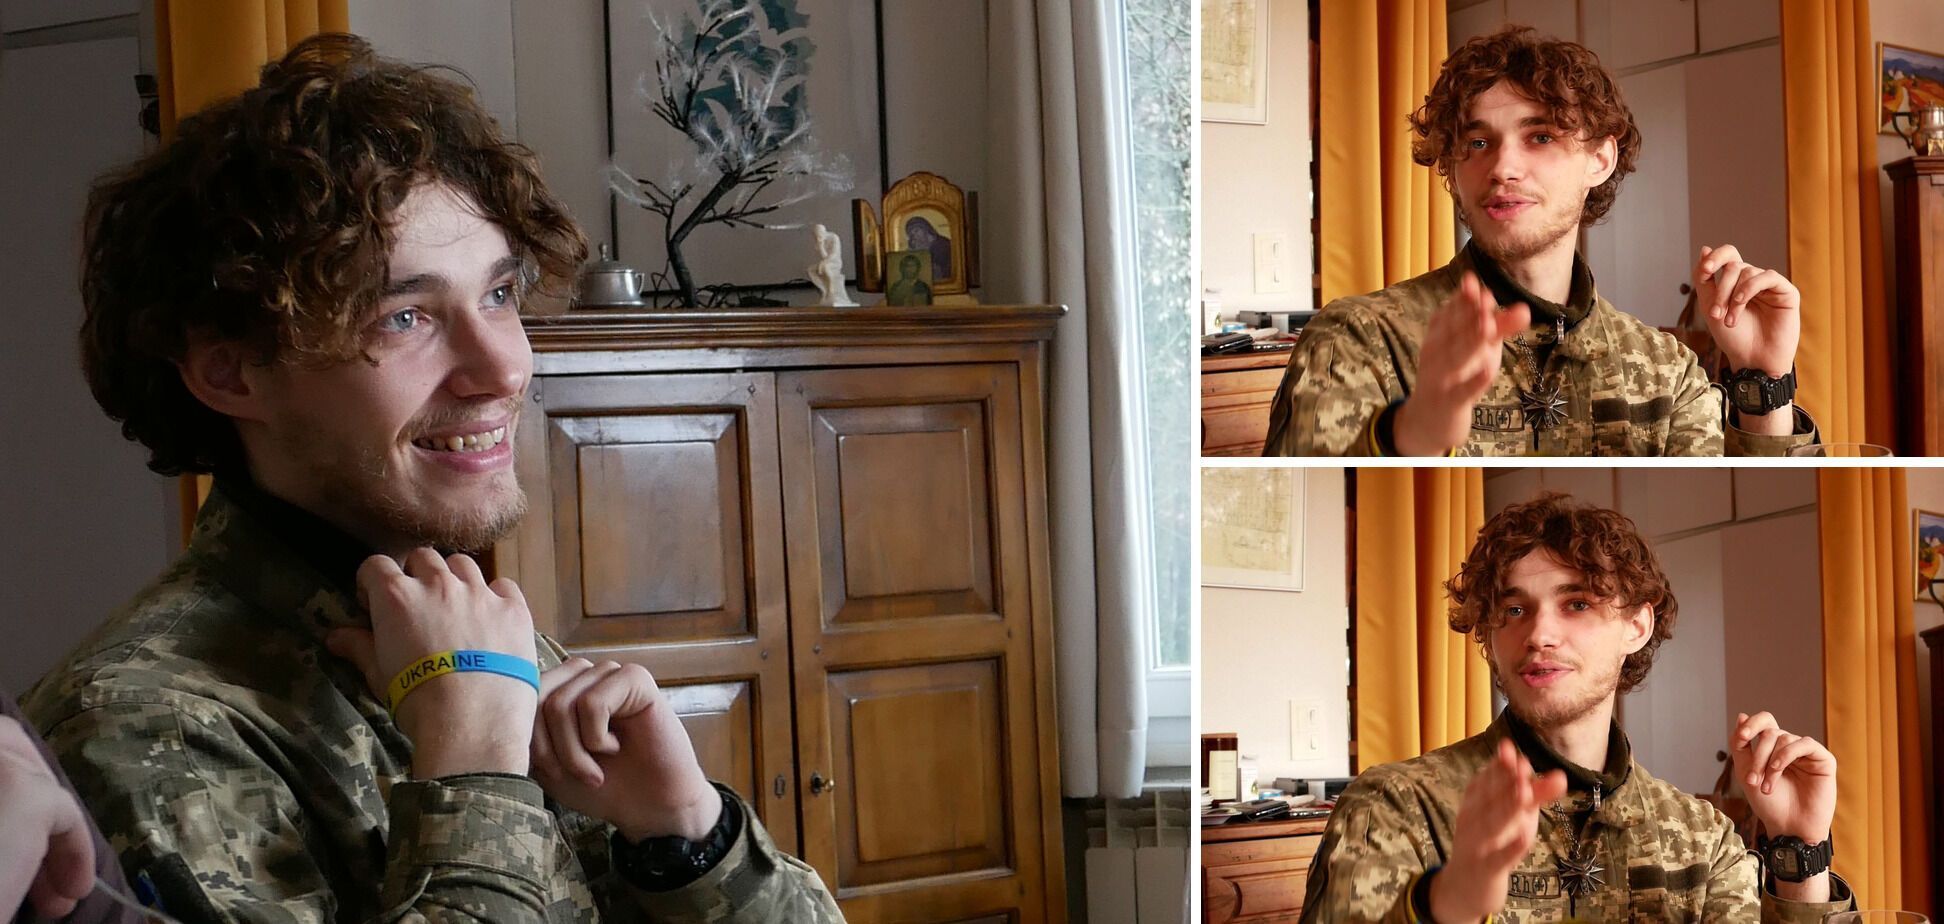 "Лише диво могло б мене врятувати": мережу вразила прощальна записка 22-річного француза, який загинув в боях за Україну. Фото